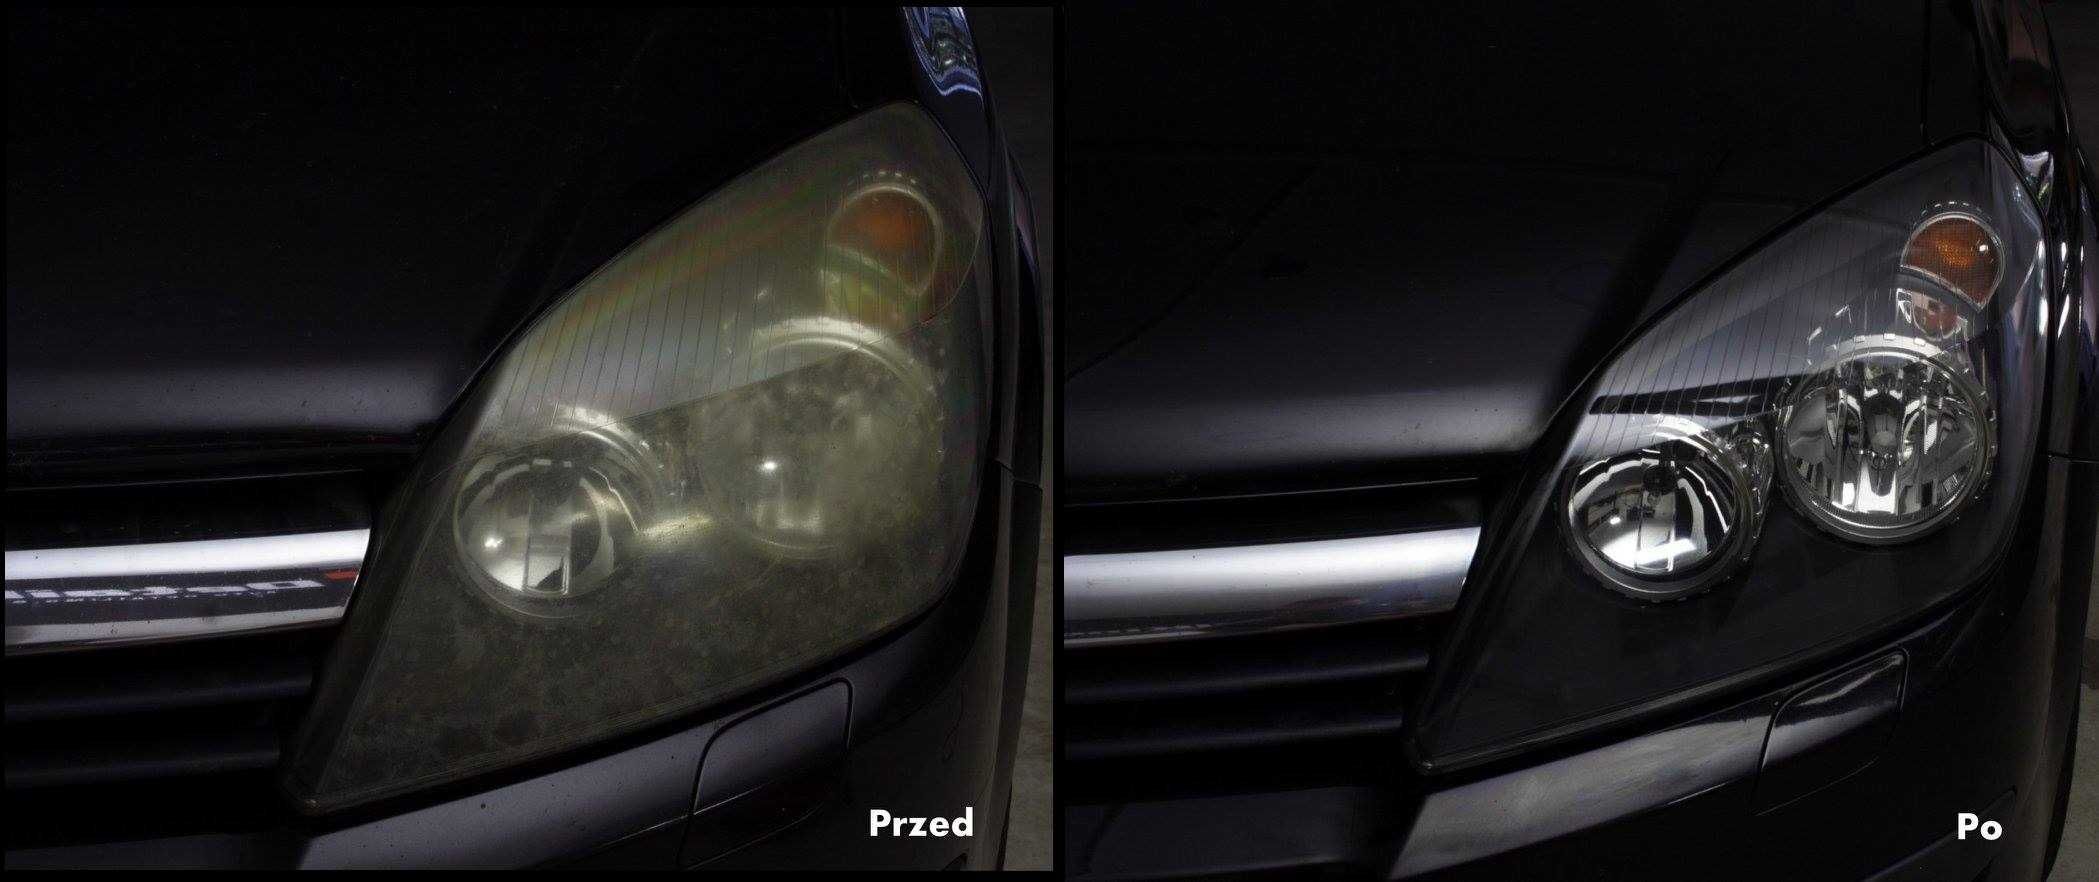 Regeneracja polerowanie reflektorów lamp samochodowych 90zl/kpl